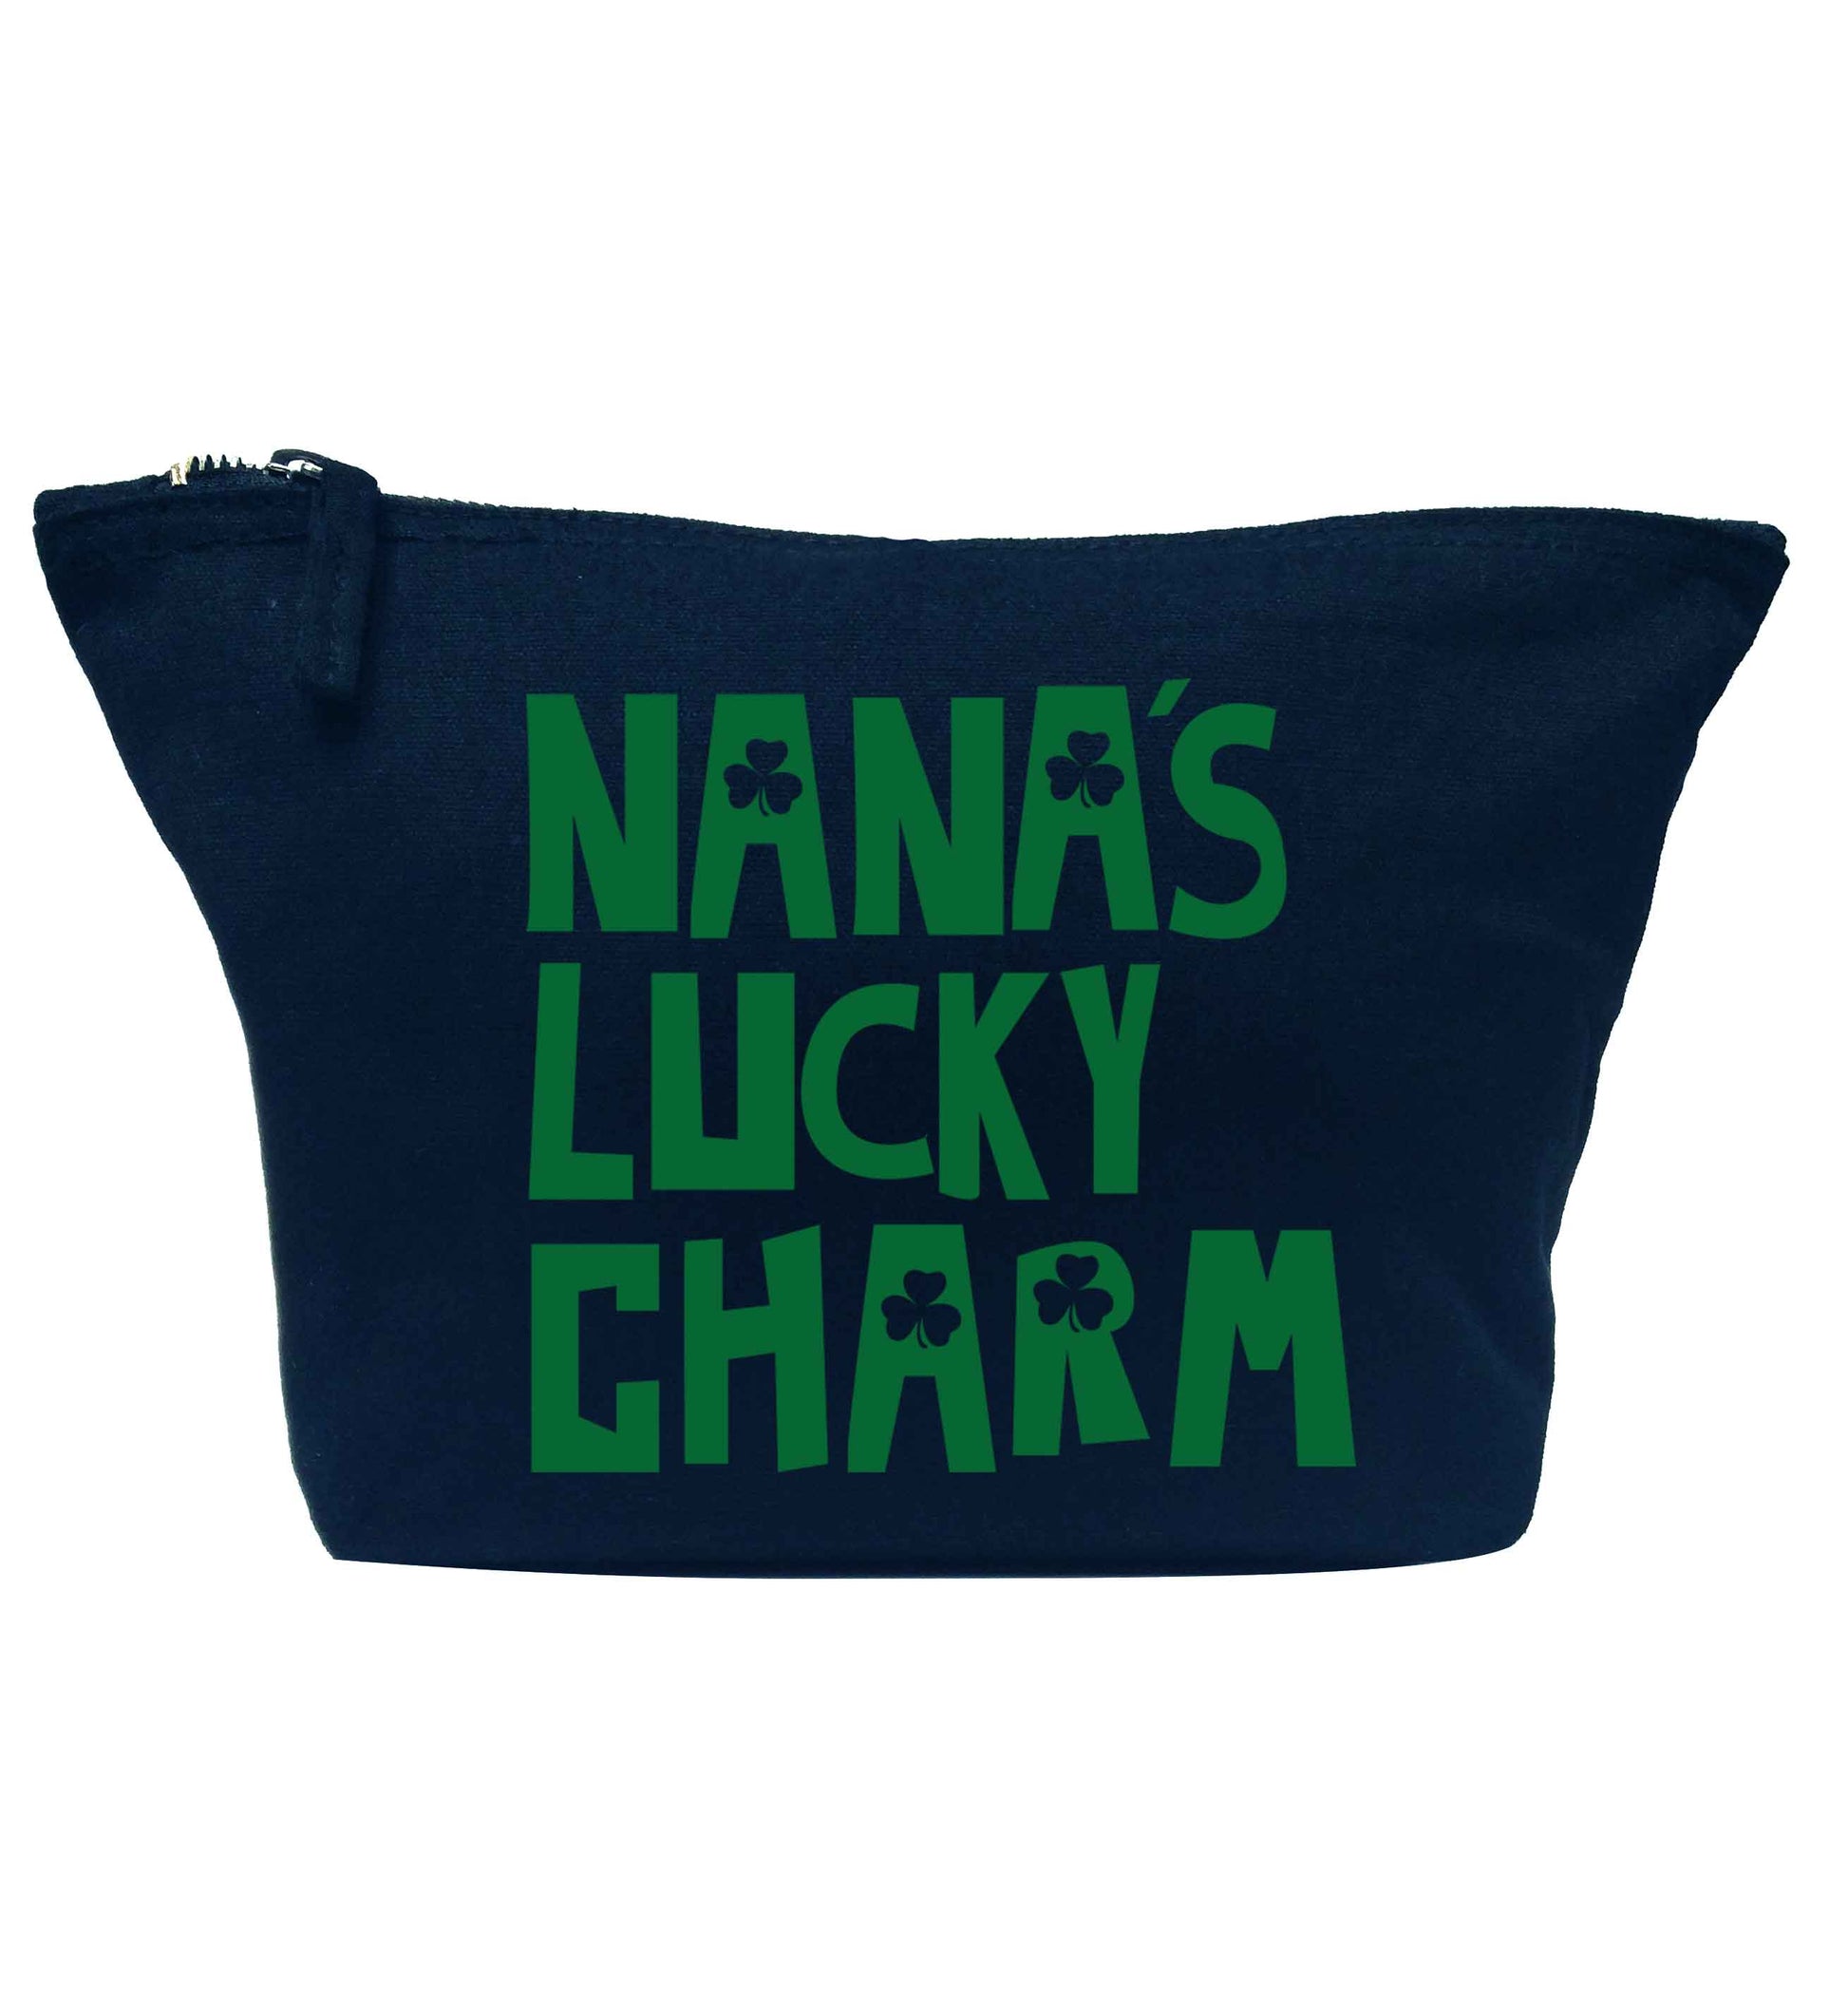 Nana's lucky charm navy makeup bag